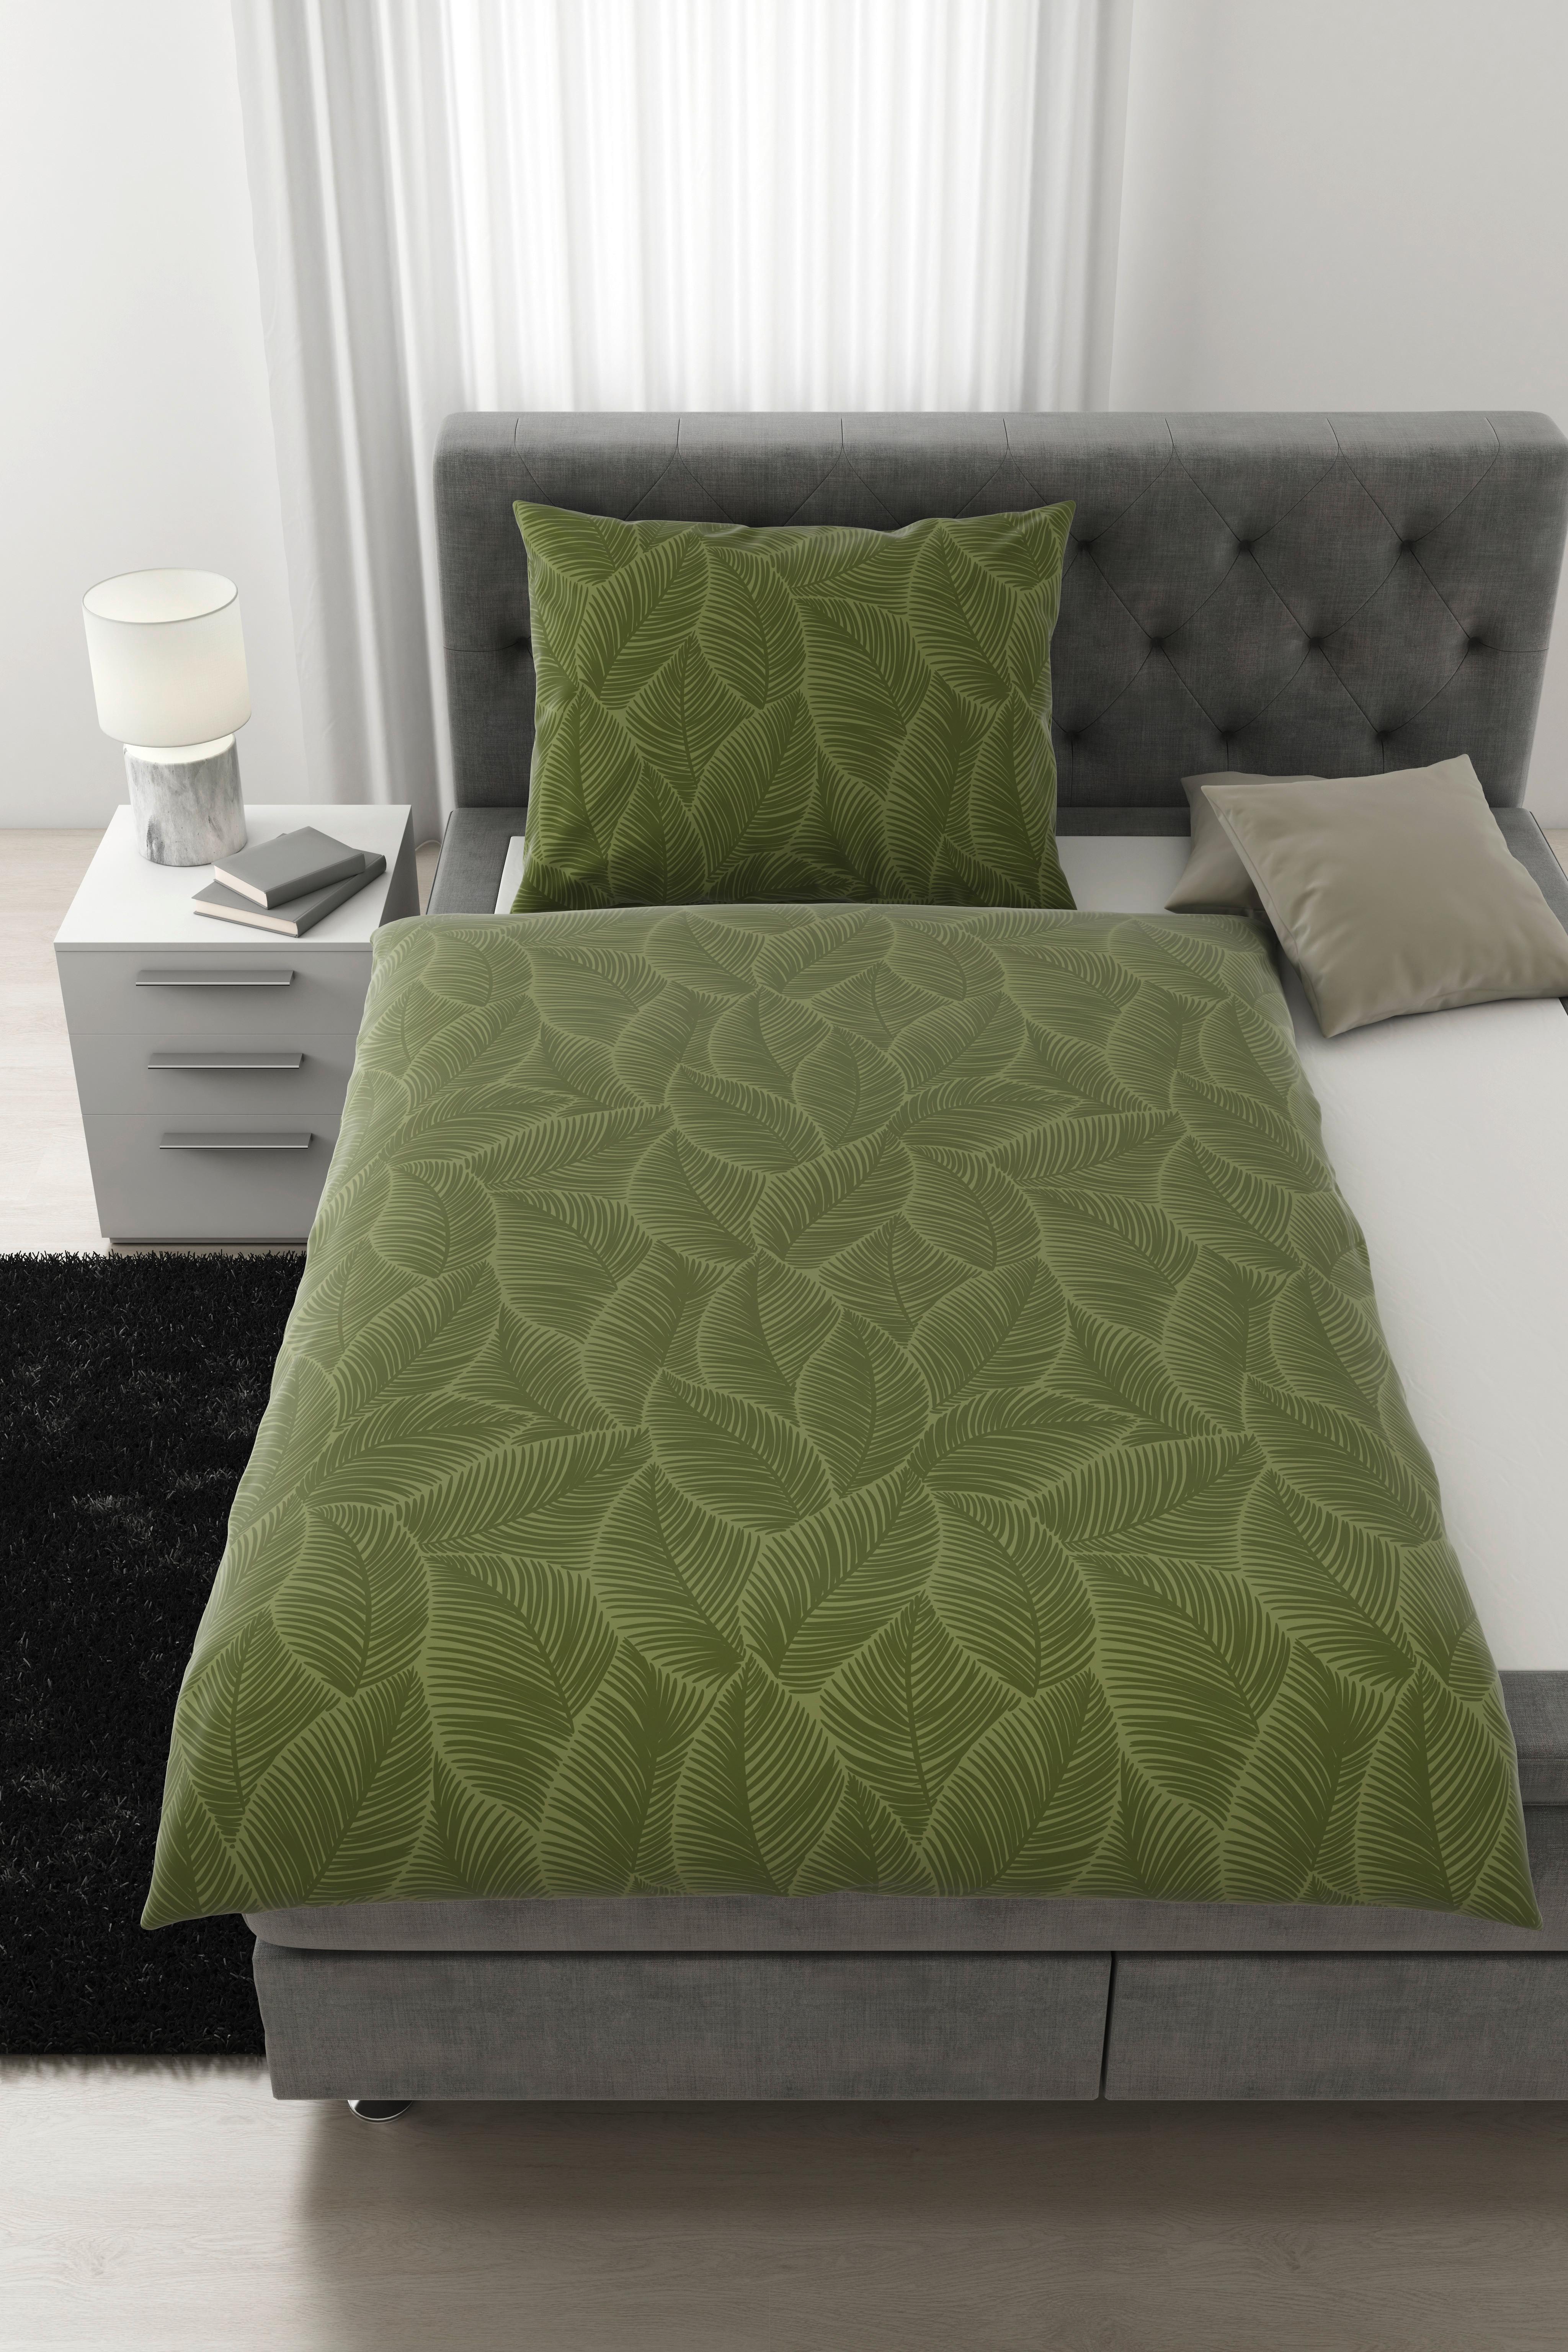 Povlečení Alex Design, 140/200cm - olivově zelená, Moderní, textil (140/200cm) - Premium Living